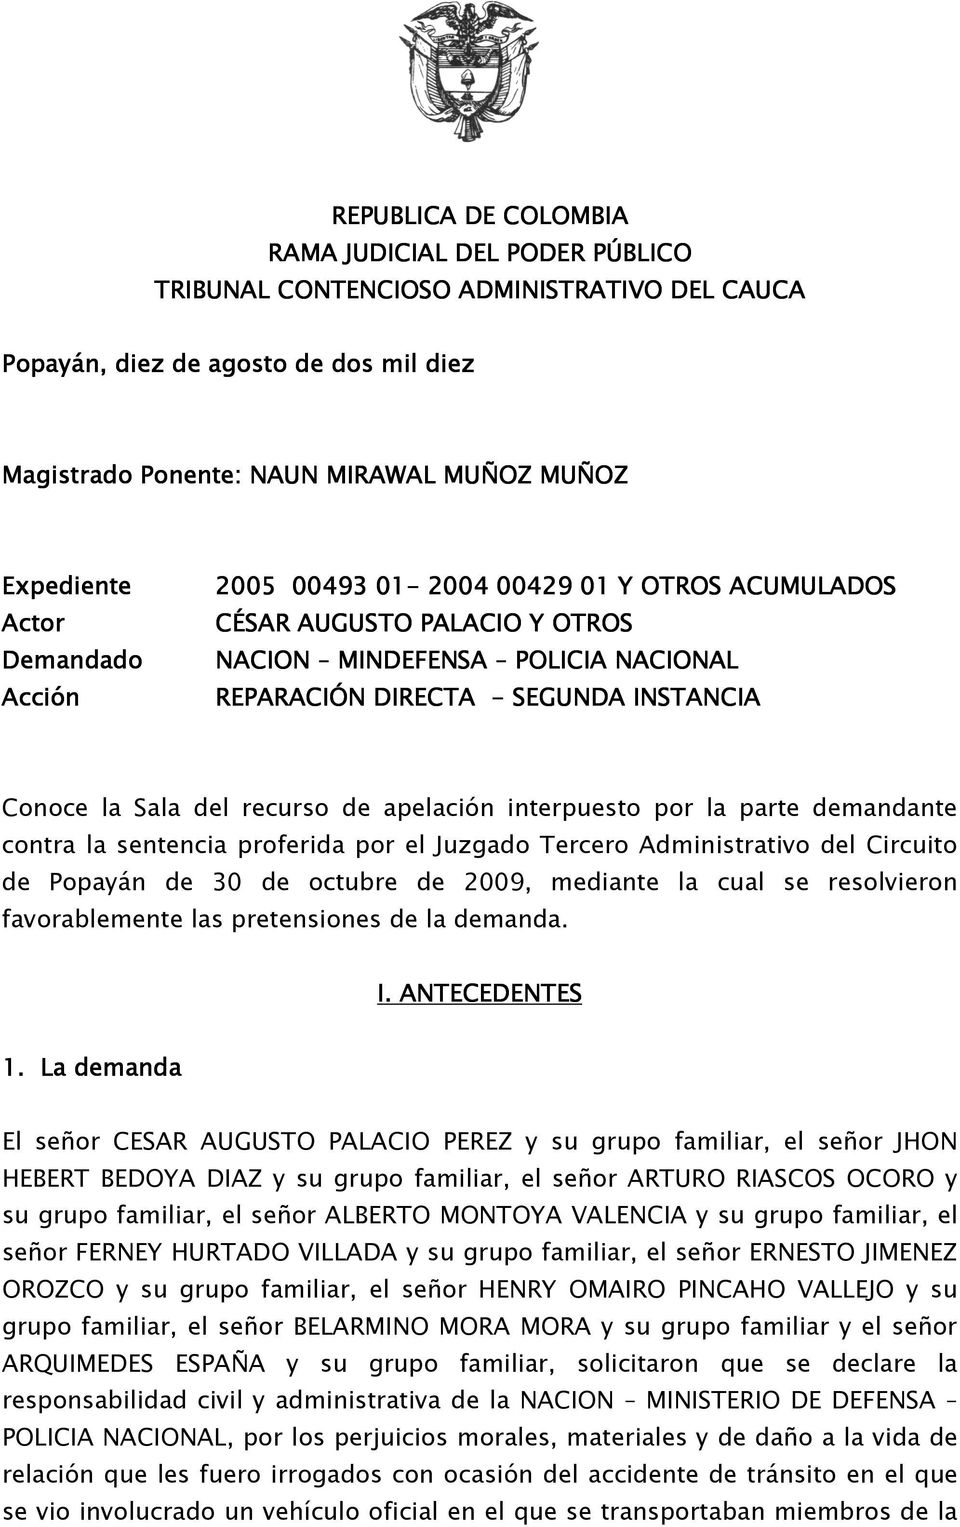 interpuesto por la parte demandante contra la sentencia proferida por el Juzgado Tercero Administrativo del Circuito de Popayán de 30 de octubre de 2009, mediante la cual se resolvieron